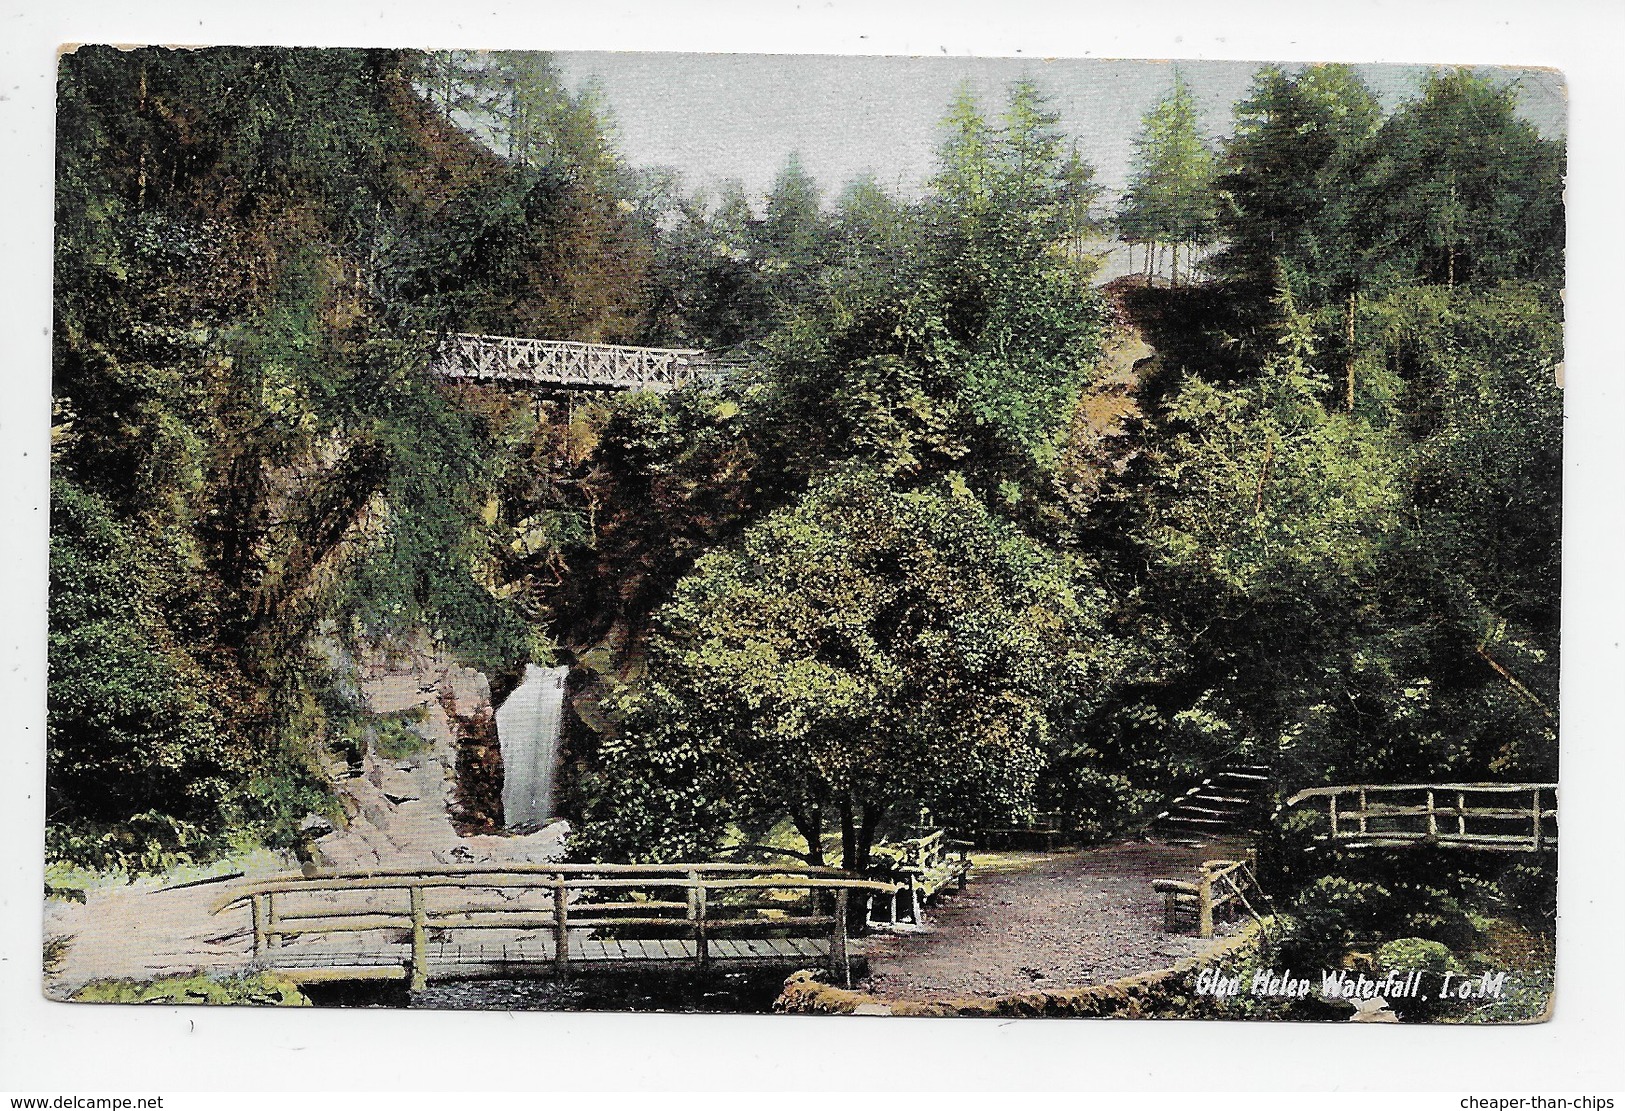 Glen Helen Waterfall, I.o.M. - Blum & Degen "Kromo" 21885 - Isle Of Man